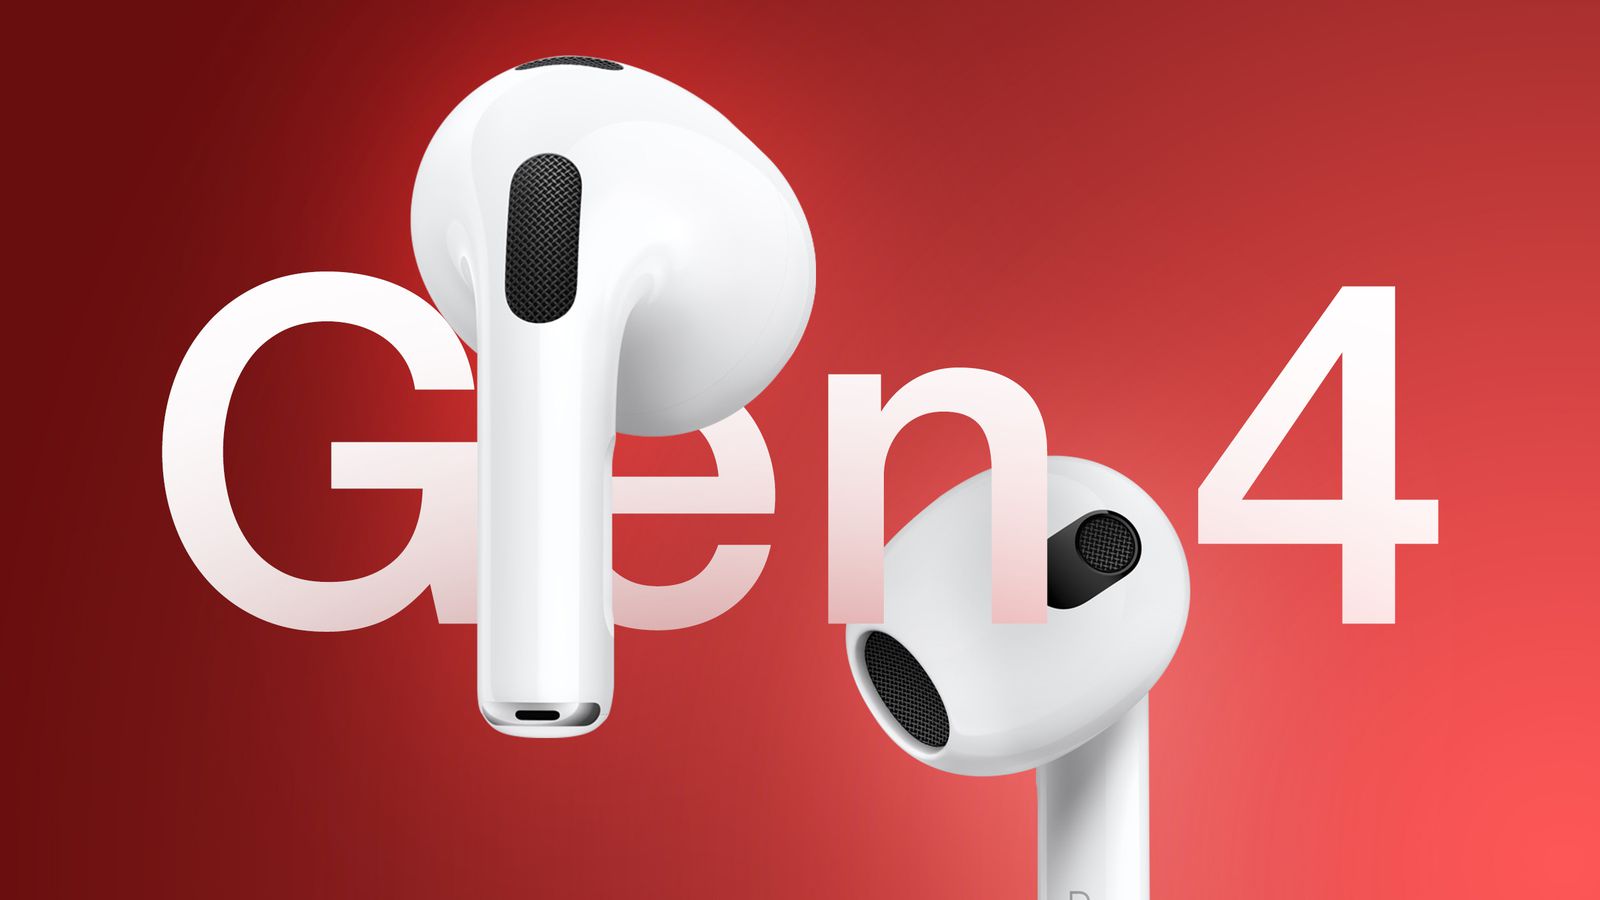 На сайті iPhoneIslam.com дві бездротові навушники з позначкою «AirPods 4» плавають на червоному фоні, демонструючи їх дизайн і розташування компонентів мікрофона та динаміка.